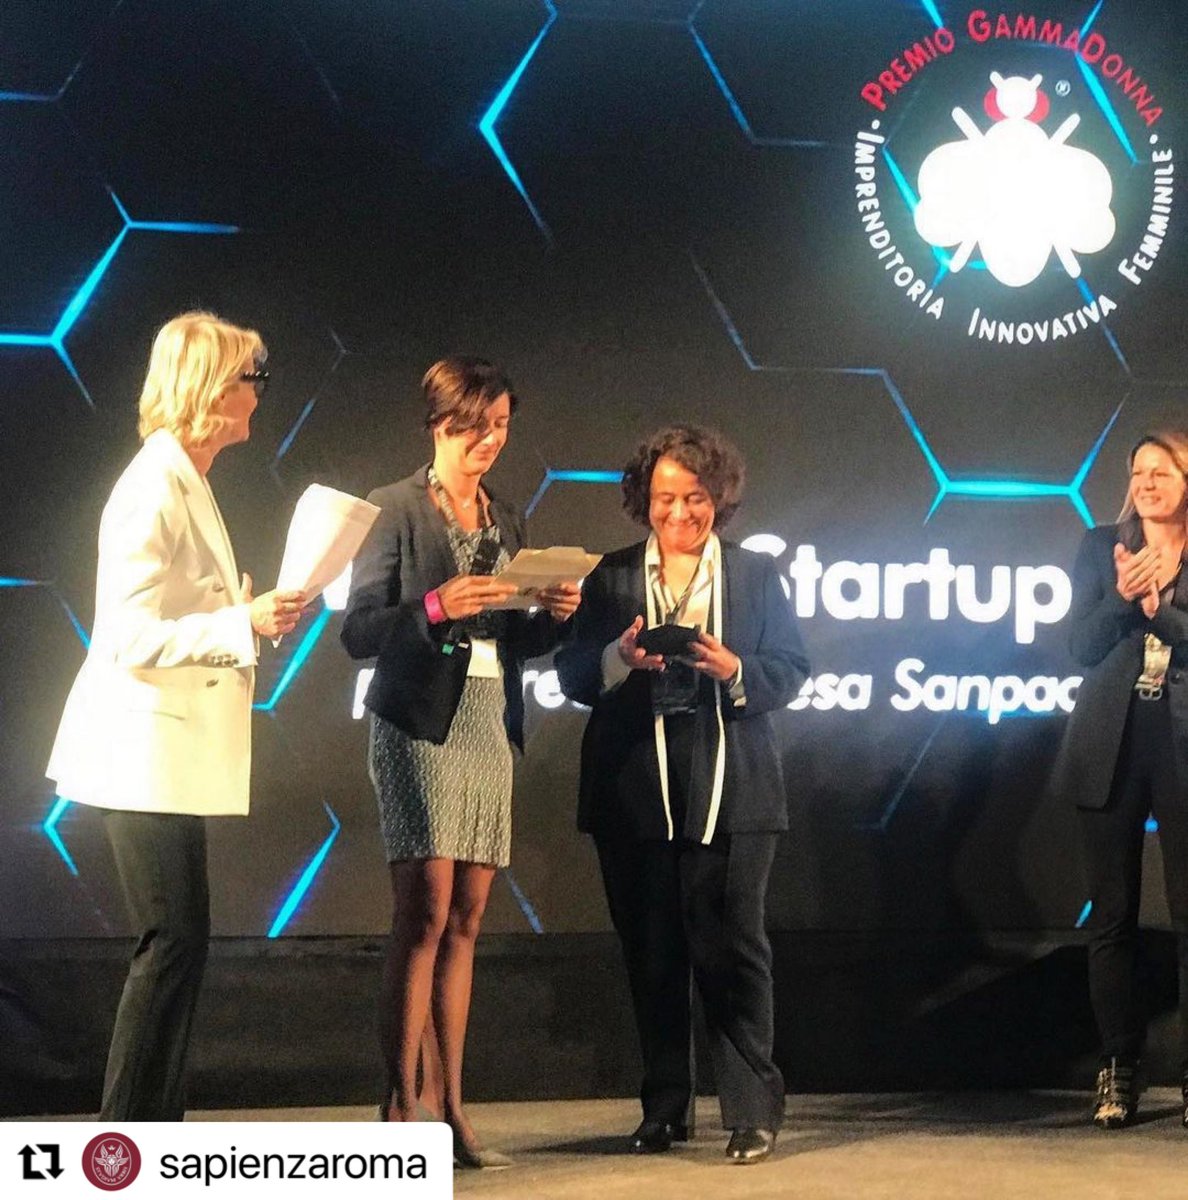 📸🏆 Alla nostra prof. Chiara Petrioli il 'Women Startup Award' di @IntesaSanPaolo Innovation Center, nell’ambito del Premio #GammaDonna 2022

[leggi tutto su ➡️ Instagram.com/p/CjL9OsgrVnb/]

#orgoglioSapienza #docentiSapienza
#I3s_Sapienza #Diag_Sapienza